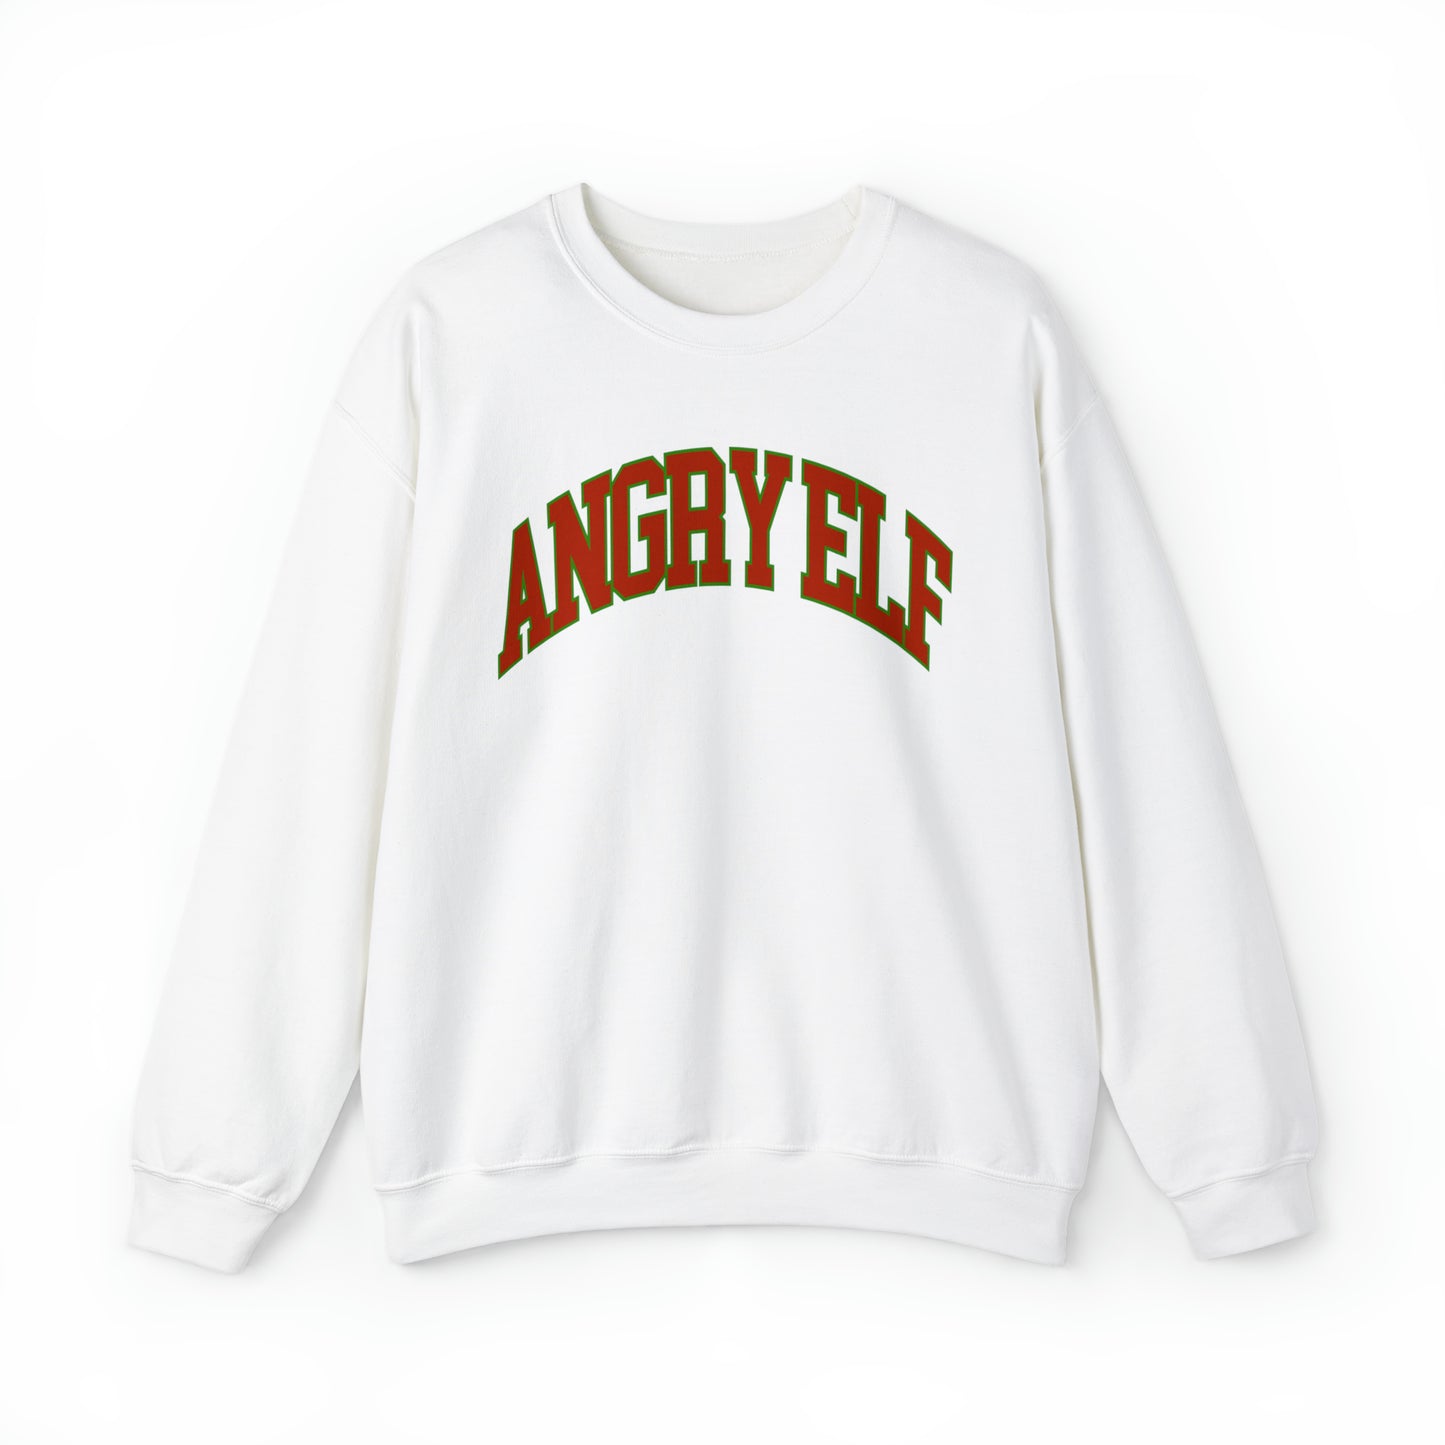 "Angry Elf" Christmas Crewneck Sweatshirt